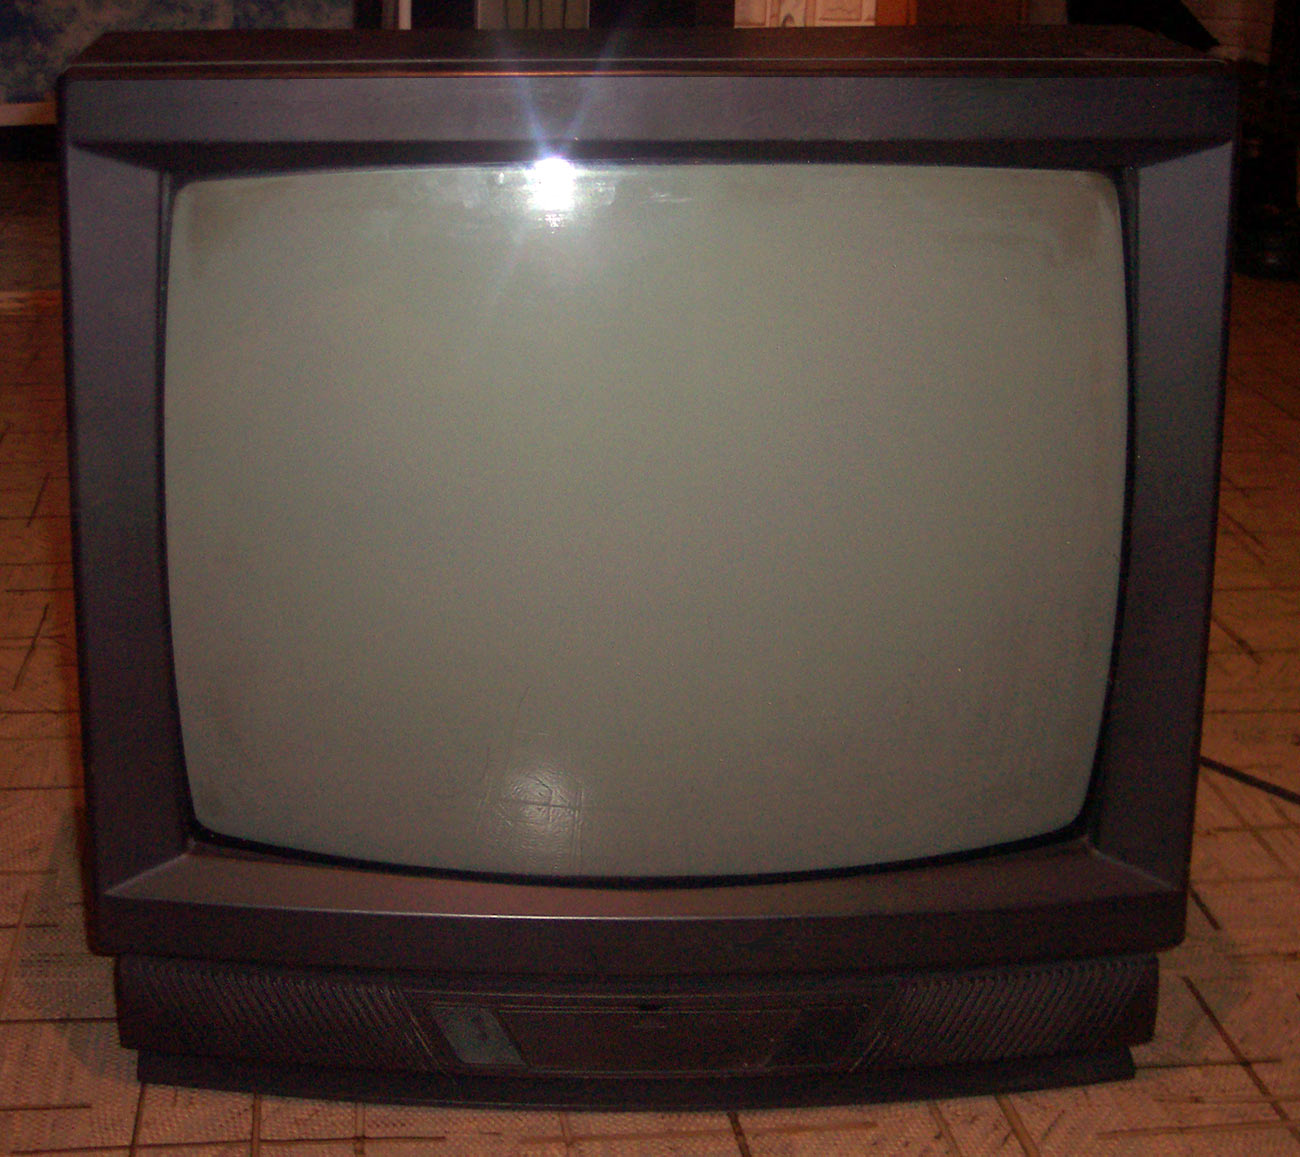 Omega TV CTV-519